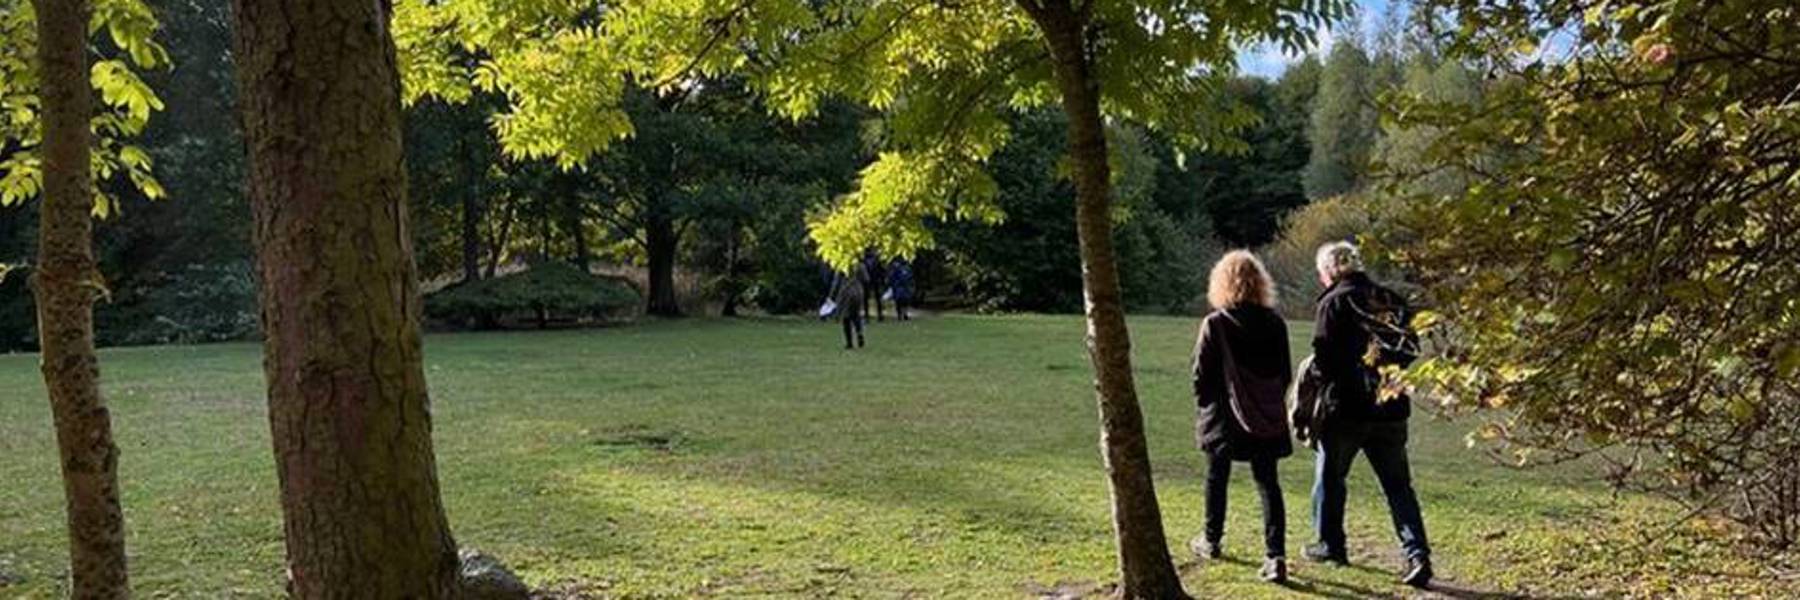 Två kvinnor promenerar i glänta i park. Foto.